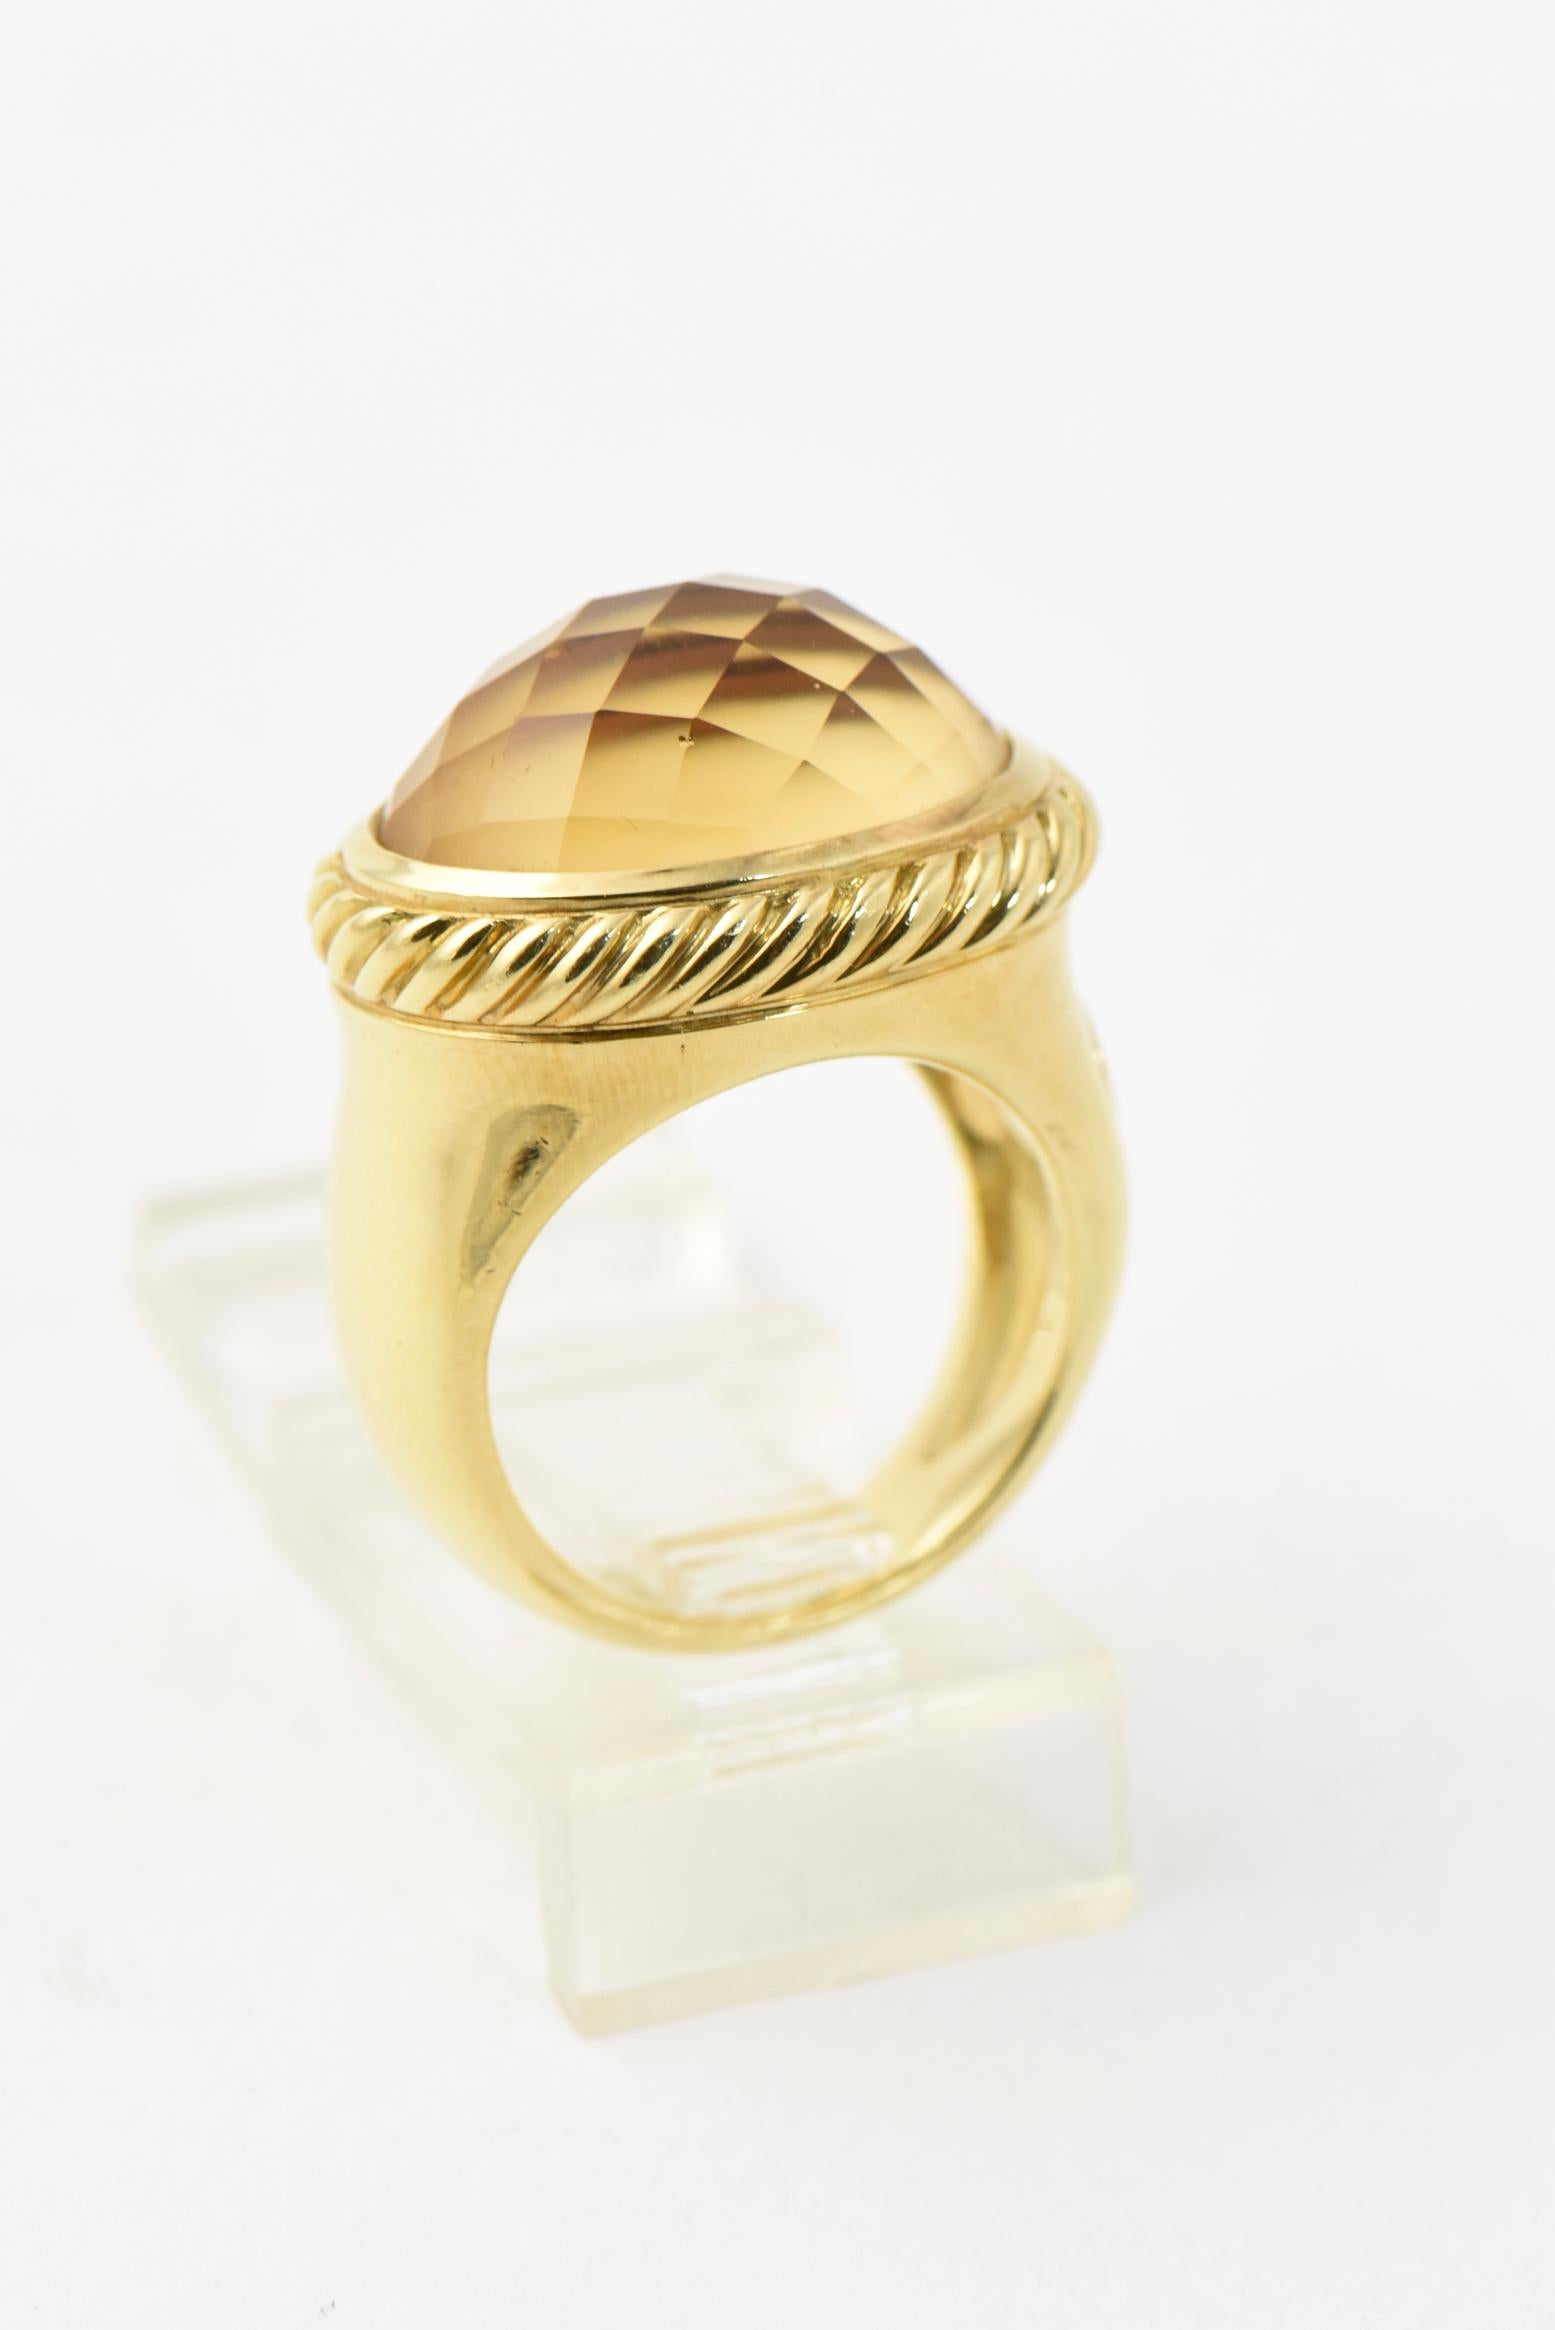 David Yurman 18k Gelbgold Ost - West Signatur Ring mit facettierten Citrin in einem Kabel Rahmen montiert. Das Band ist aus massivem Gold mit einer glatten Oberfläche. Markiert DY auf der Außenkante und 750 & DY im Inneren des Bandes. US Größe